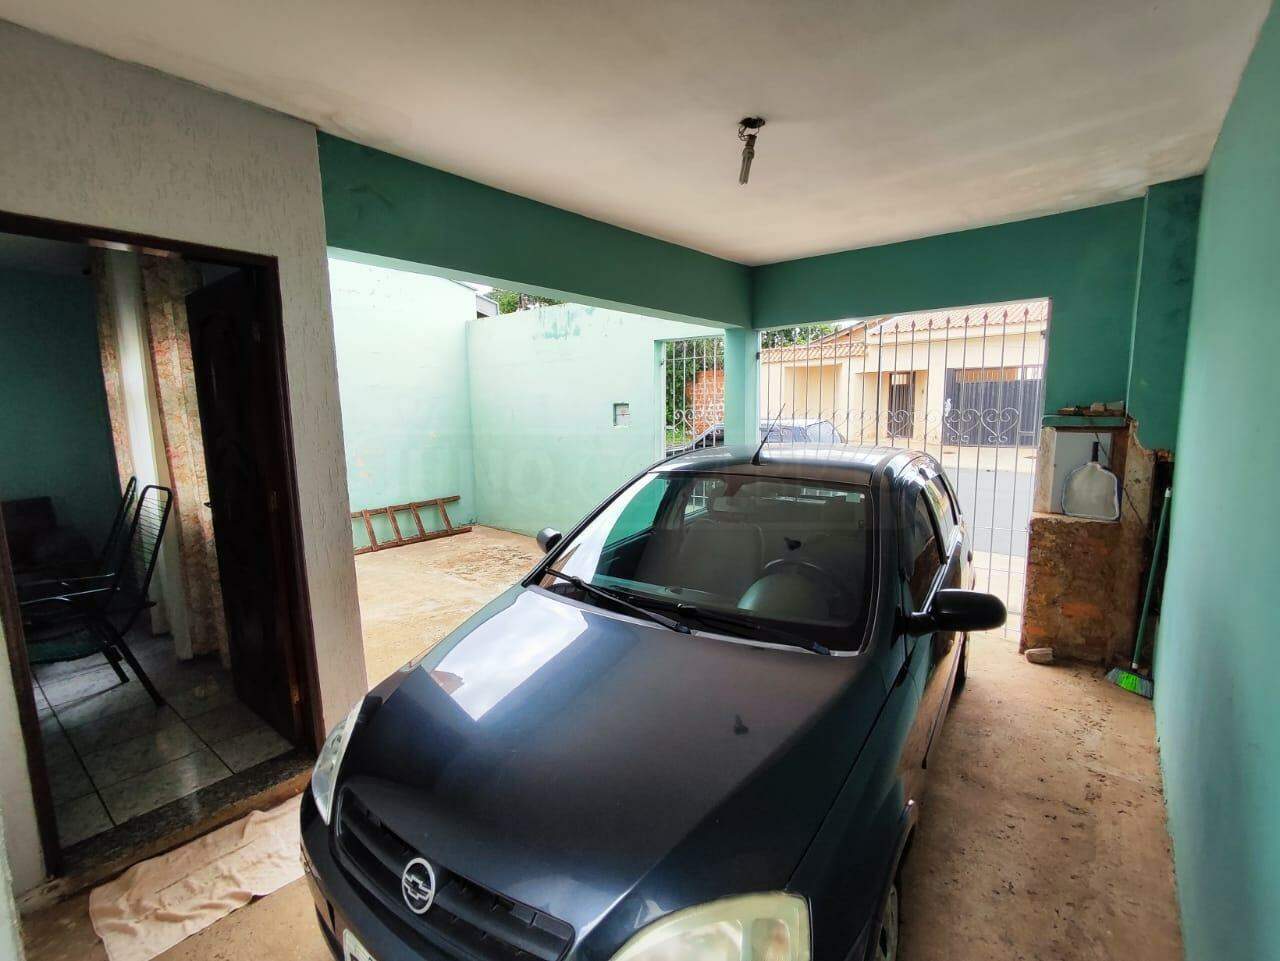 Casa à venda, 3 quartos, sendo 1 suíte, 2 vagas, no bairro Santa Maria II em Rio das Pedras - SP